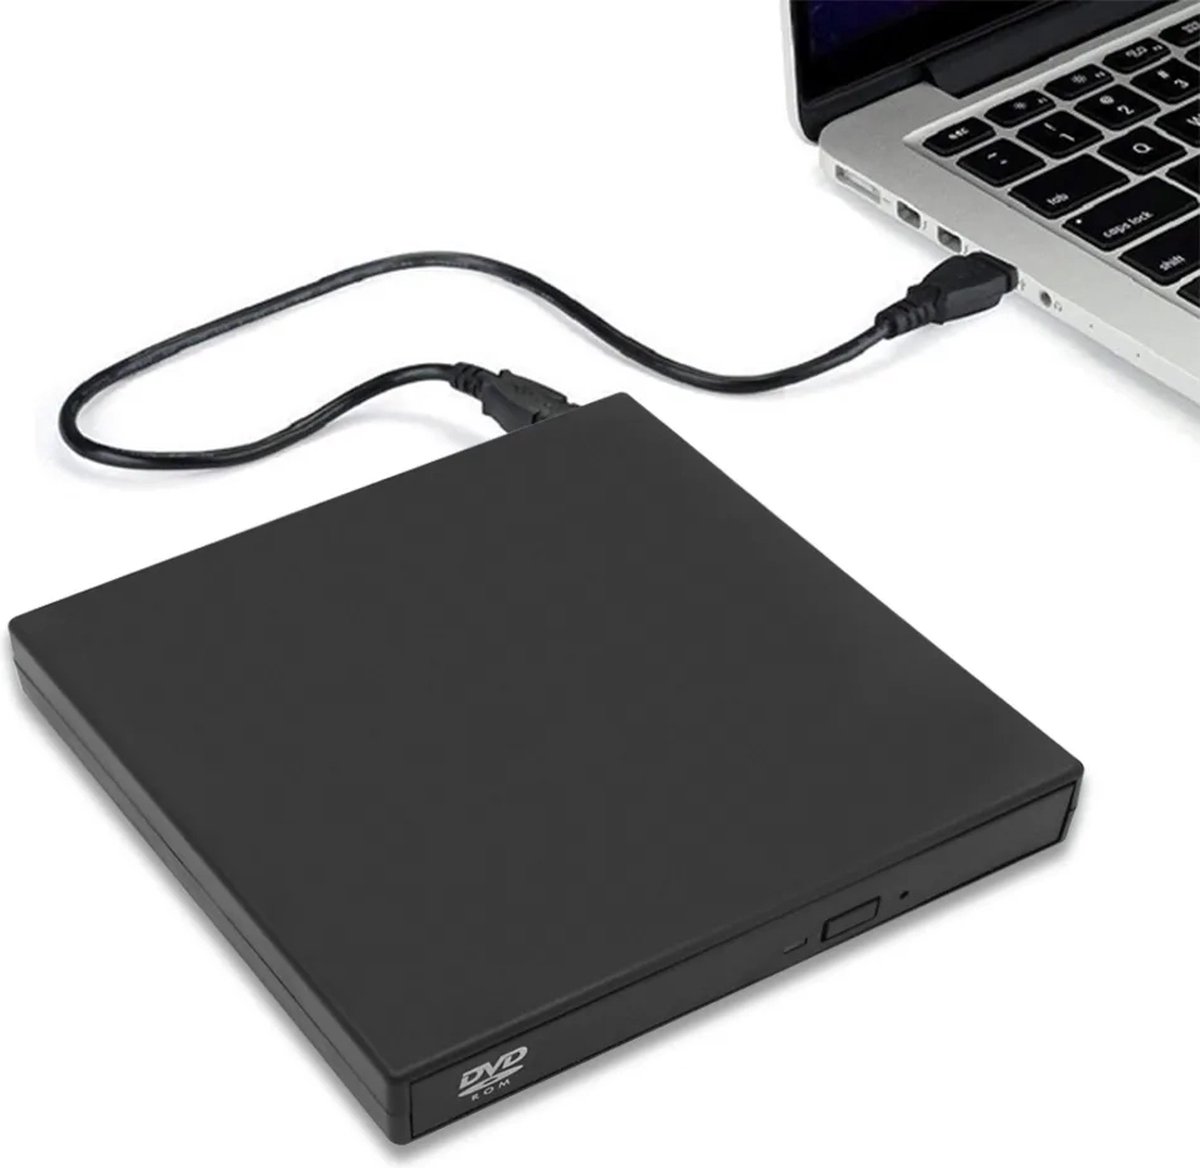 LikedMinds - DVD Speler Laptop - Externe DVD Speler voor Laptop - Geschikt voor Windows, Linux en Macbook - USB 3.0